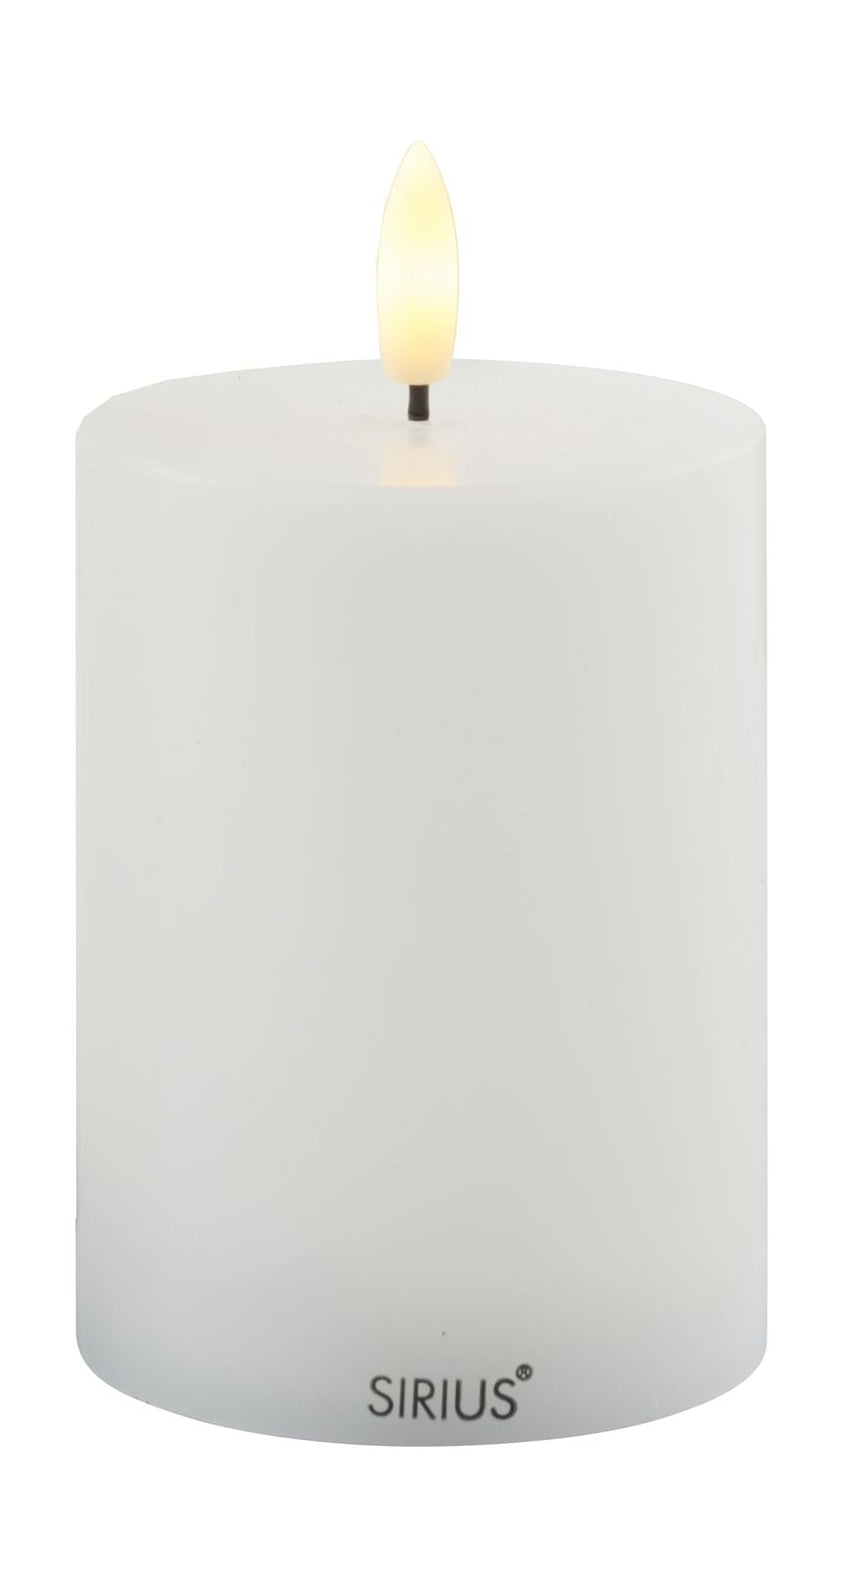 Sirius Sille ladattava LED -kynttilä valkoinen, Ø7,5x H10 cm